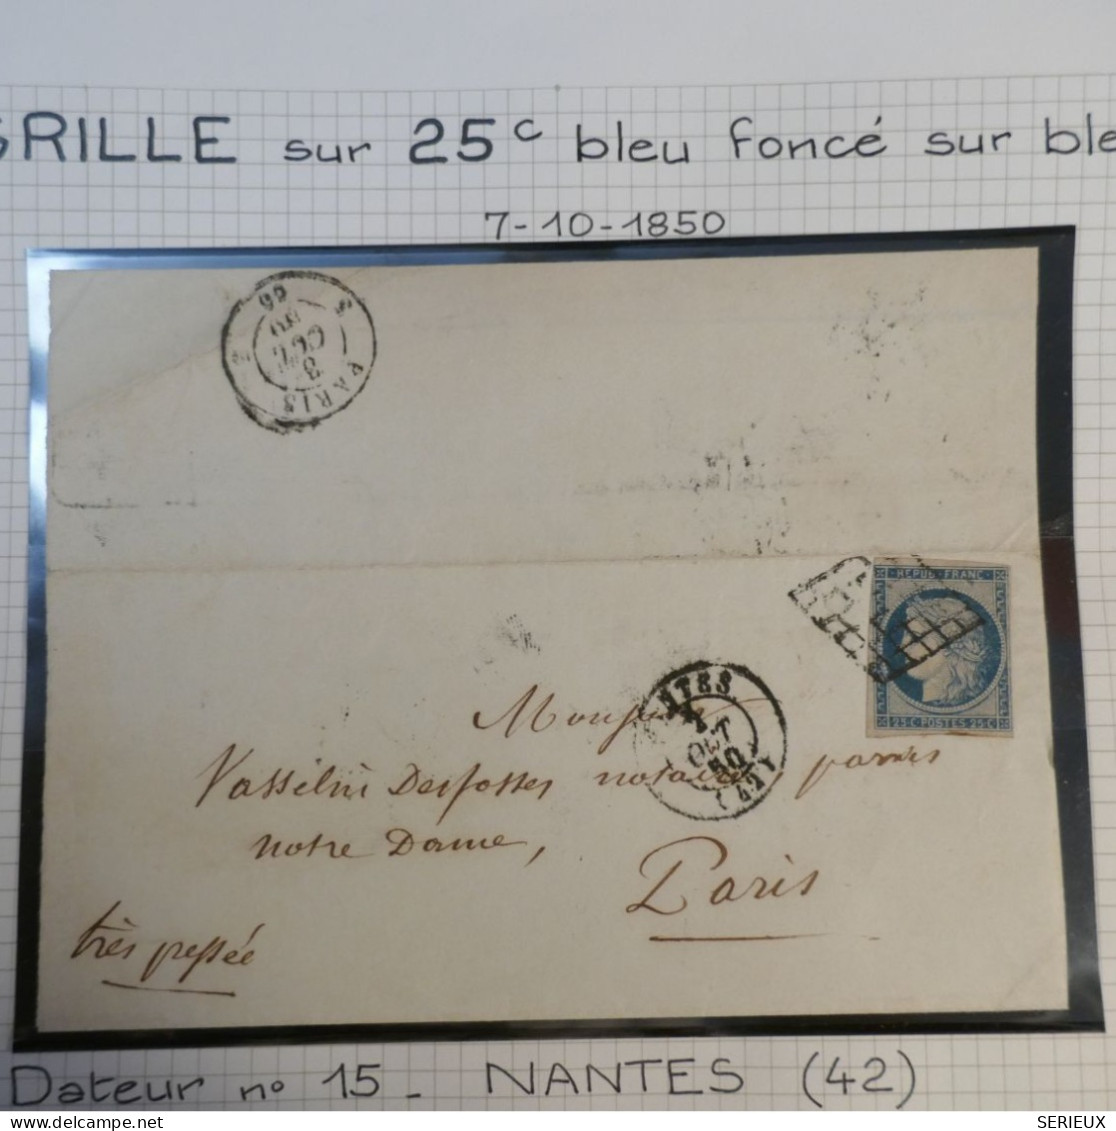 DK3 FRANCE  BELLE LETTRE RARE  7 10. 1850  NANTES A NOTRE DAME  PARIS+ N°4 FONCé + OB. GRILLE +DISPERSION DE COLLECTION+ - 1849-1876: Klassik